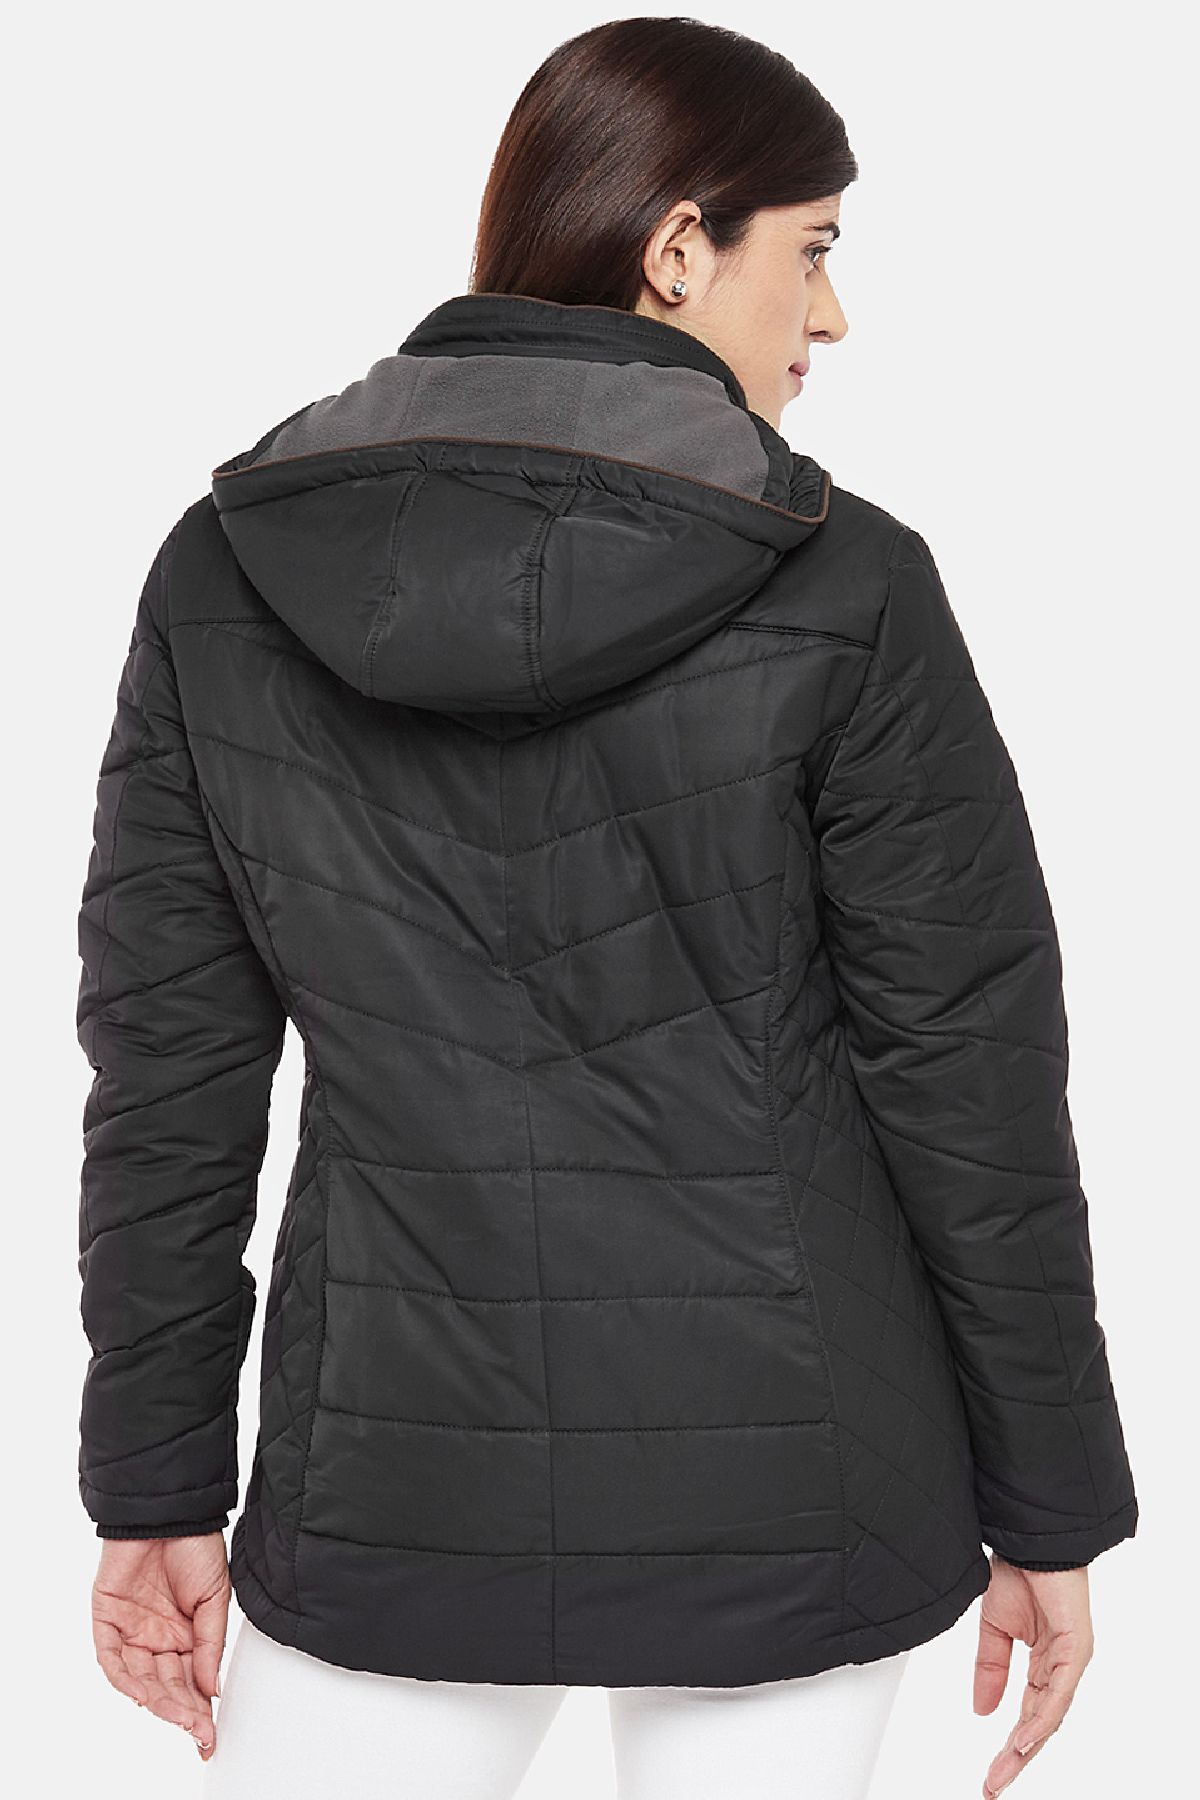 Black Fleece Lined Puffer Jacket | Women